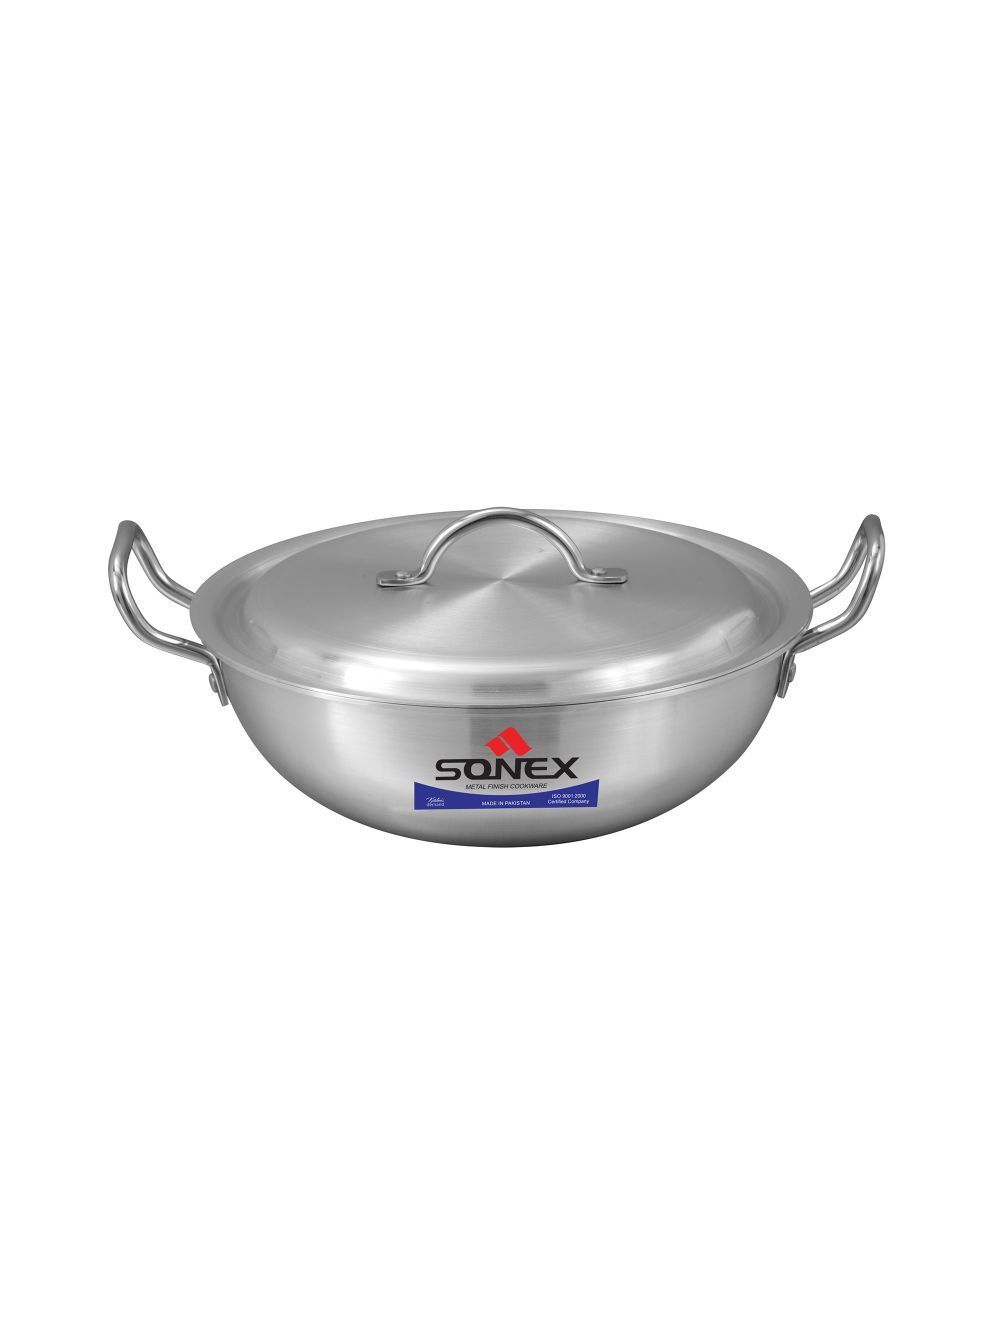 Sonex Round Wok W/Lid Aluminum 34cm